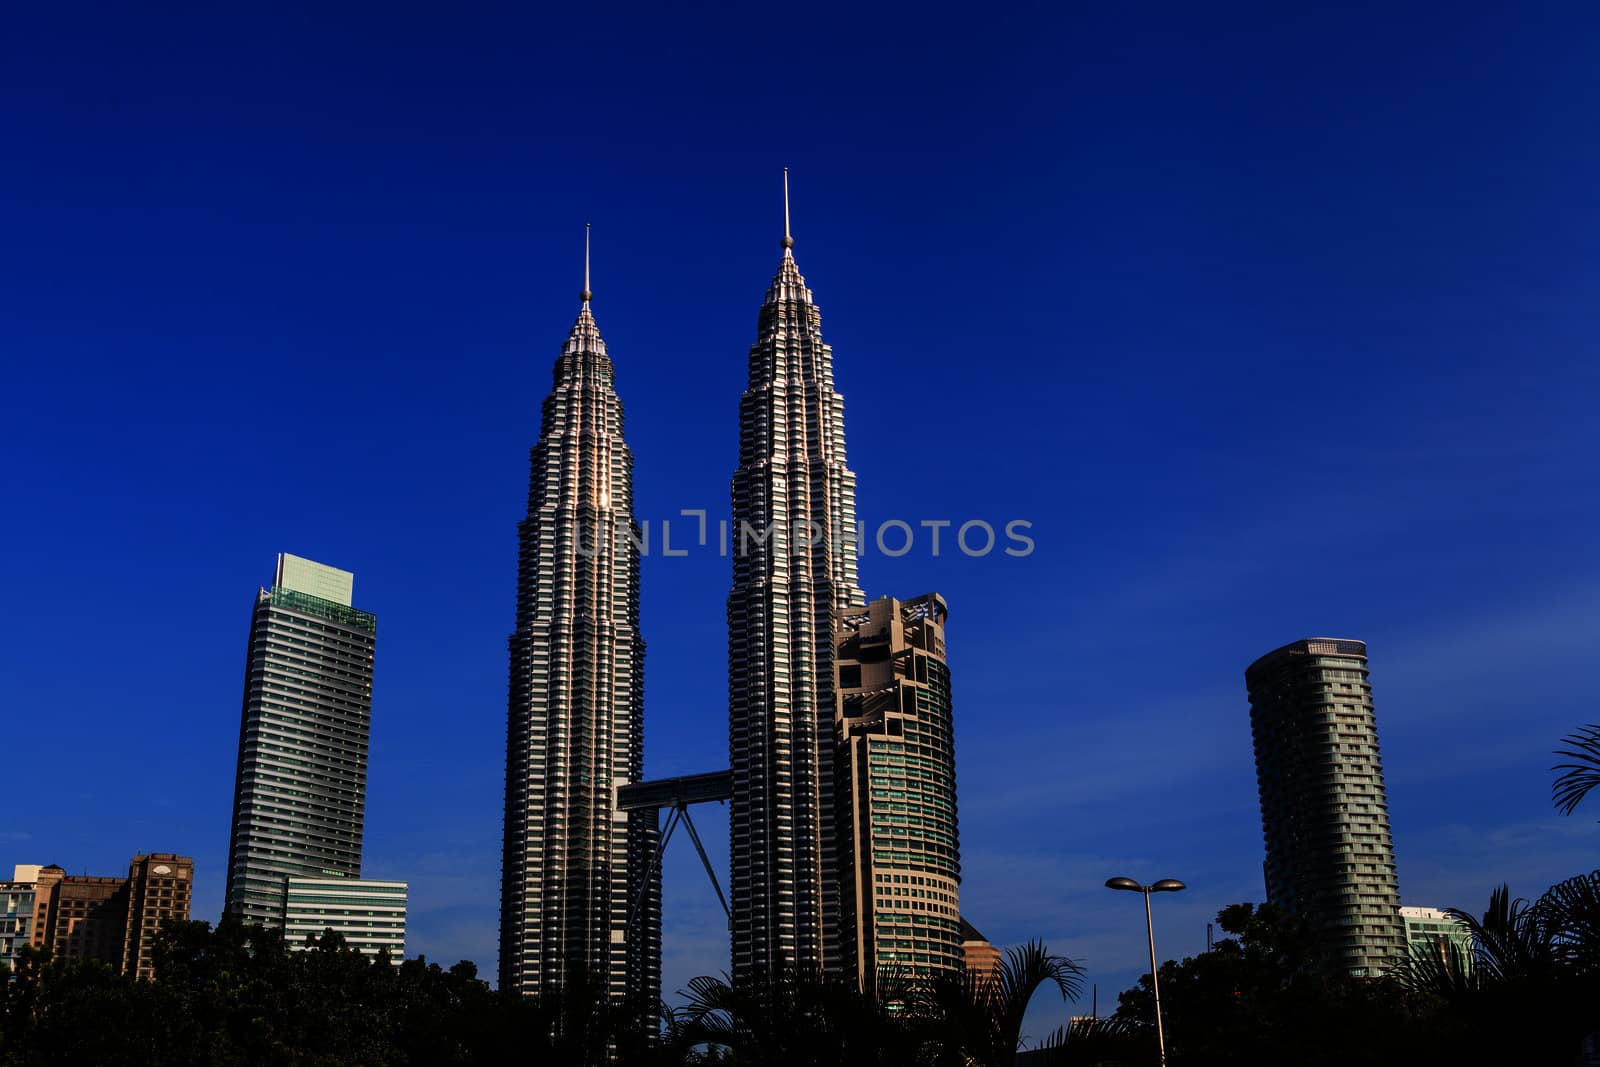 KUALA LUMPUR - JUN 6: View of The Petronas Twin Towers on Jun 6, 2012 in Kuala Lumpur, Malaysia. This famous landmark of Malaysia are the tallest twin buildings in the world (451.9 m).